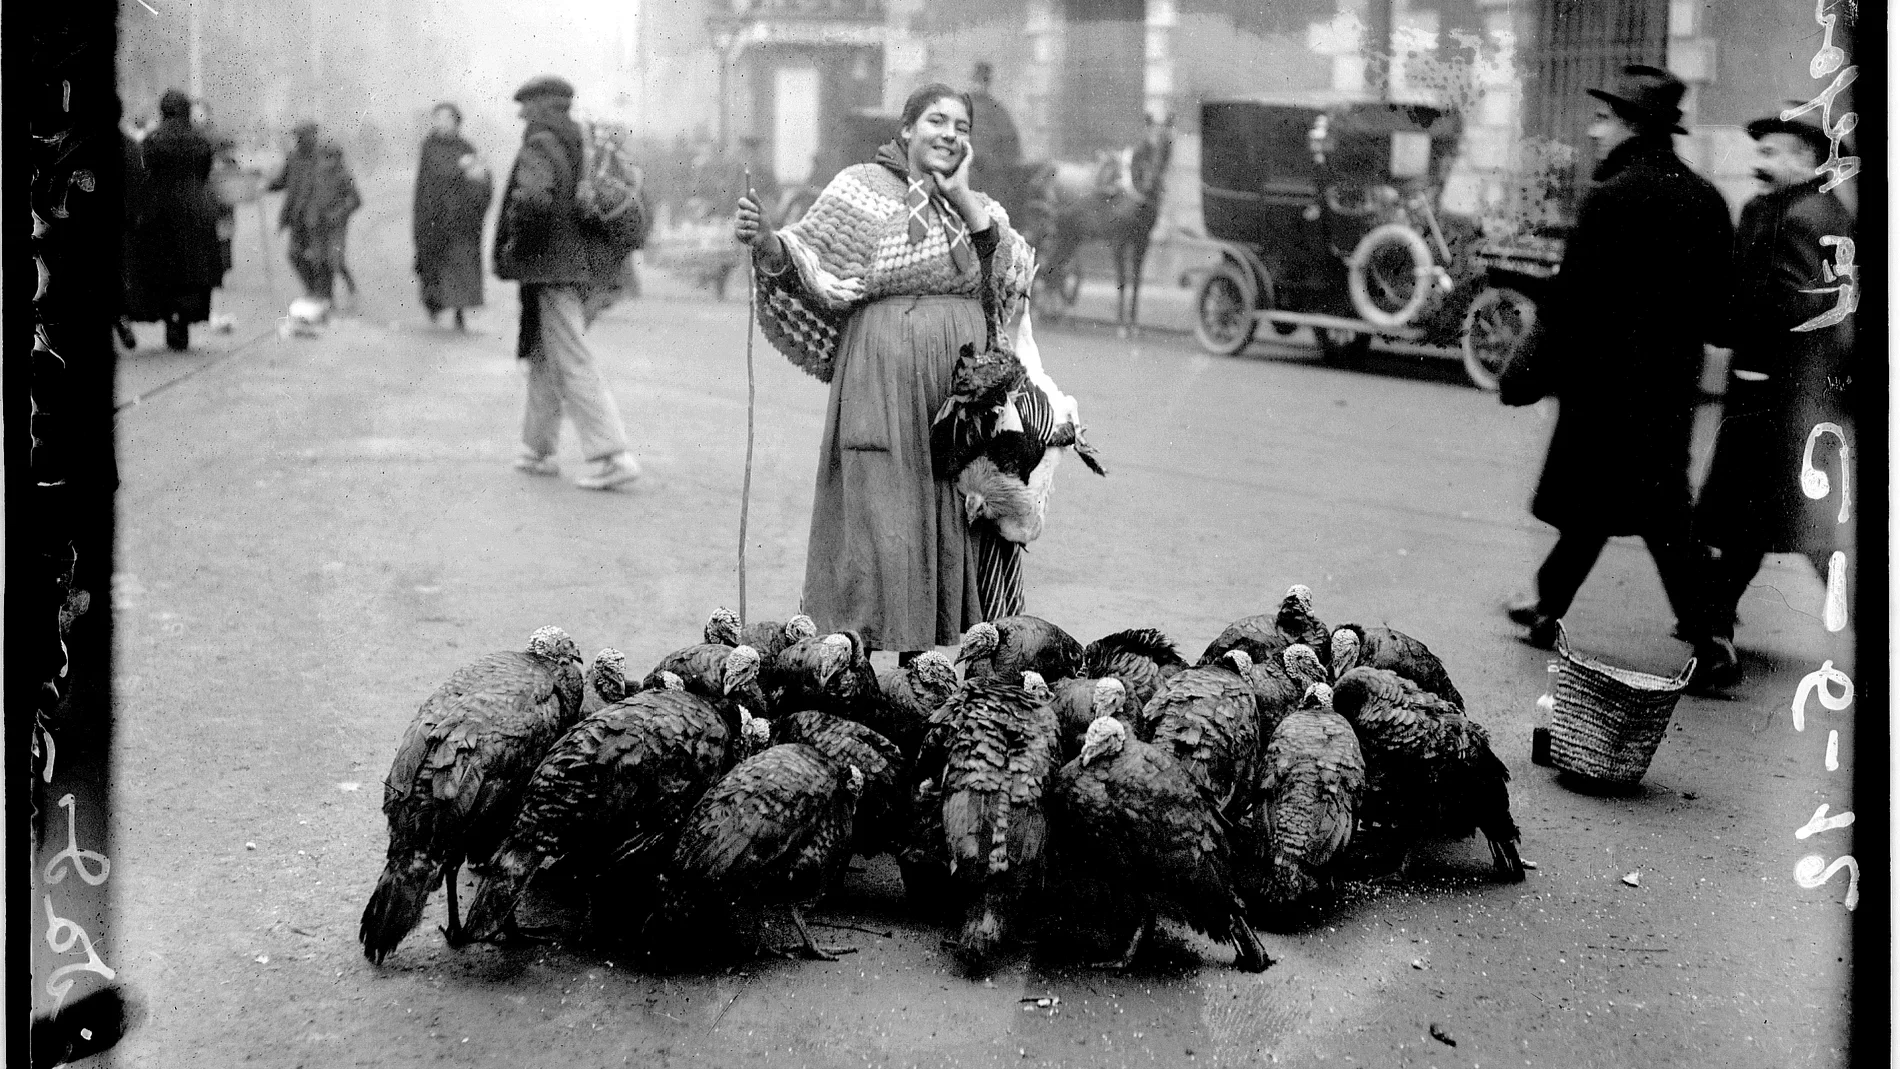 Una vendedora de pavos en la plazuela de Santa Cruz, en Madrid, en la Navidad de 1925. Es una de las muchas imágenes que podrían haber hecho tanto el padre como el hijo